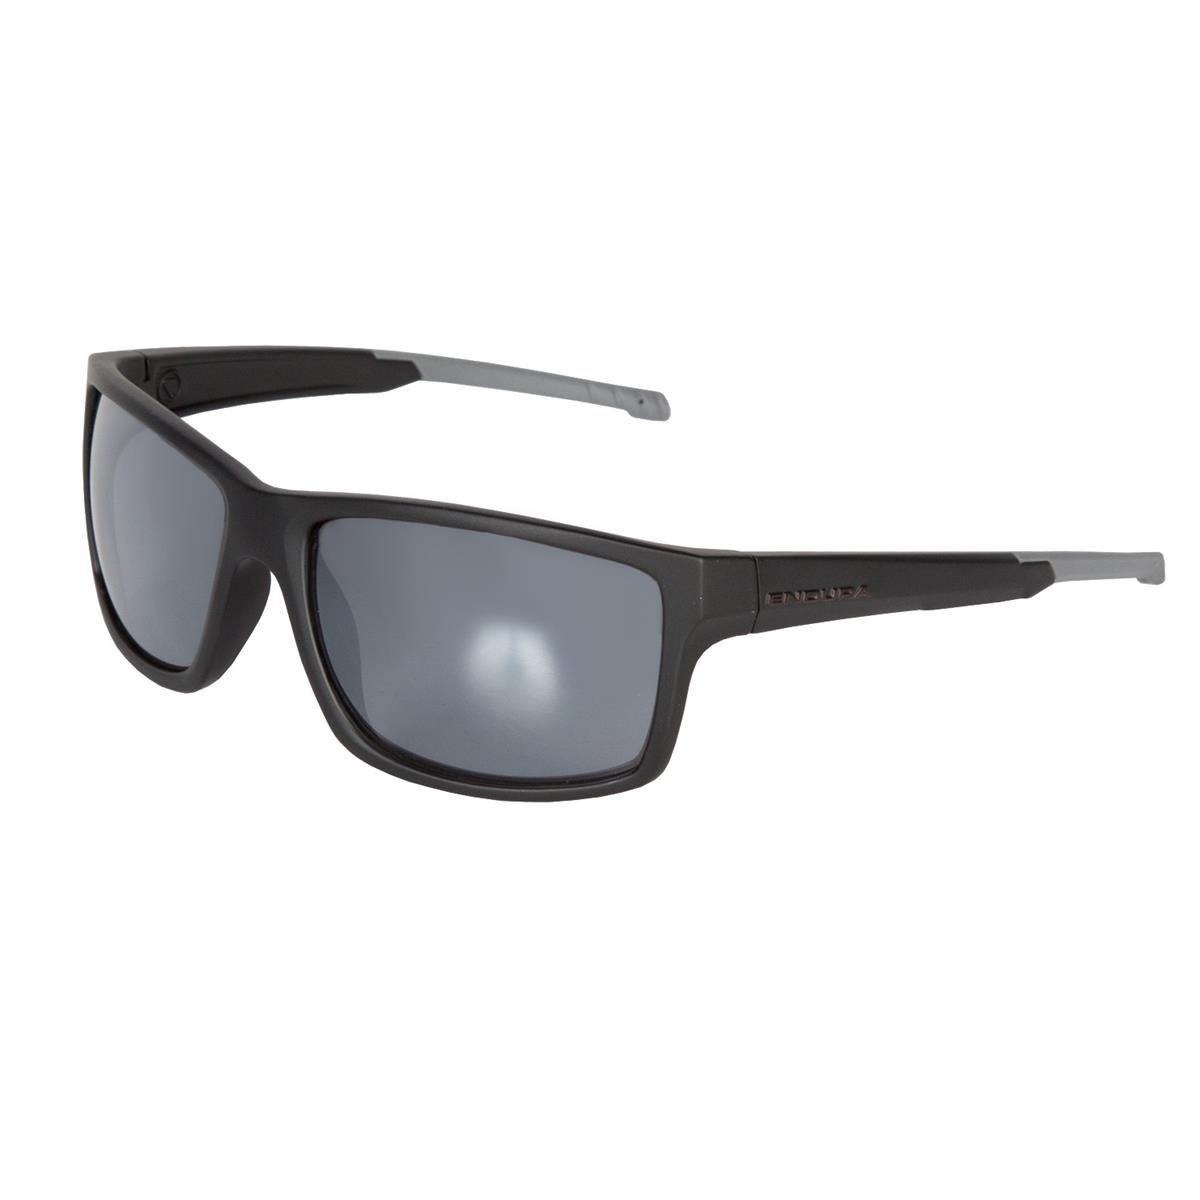 Endura Sunglasses Hummvee Black